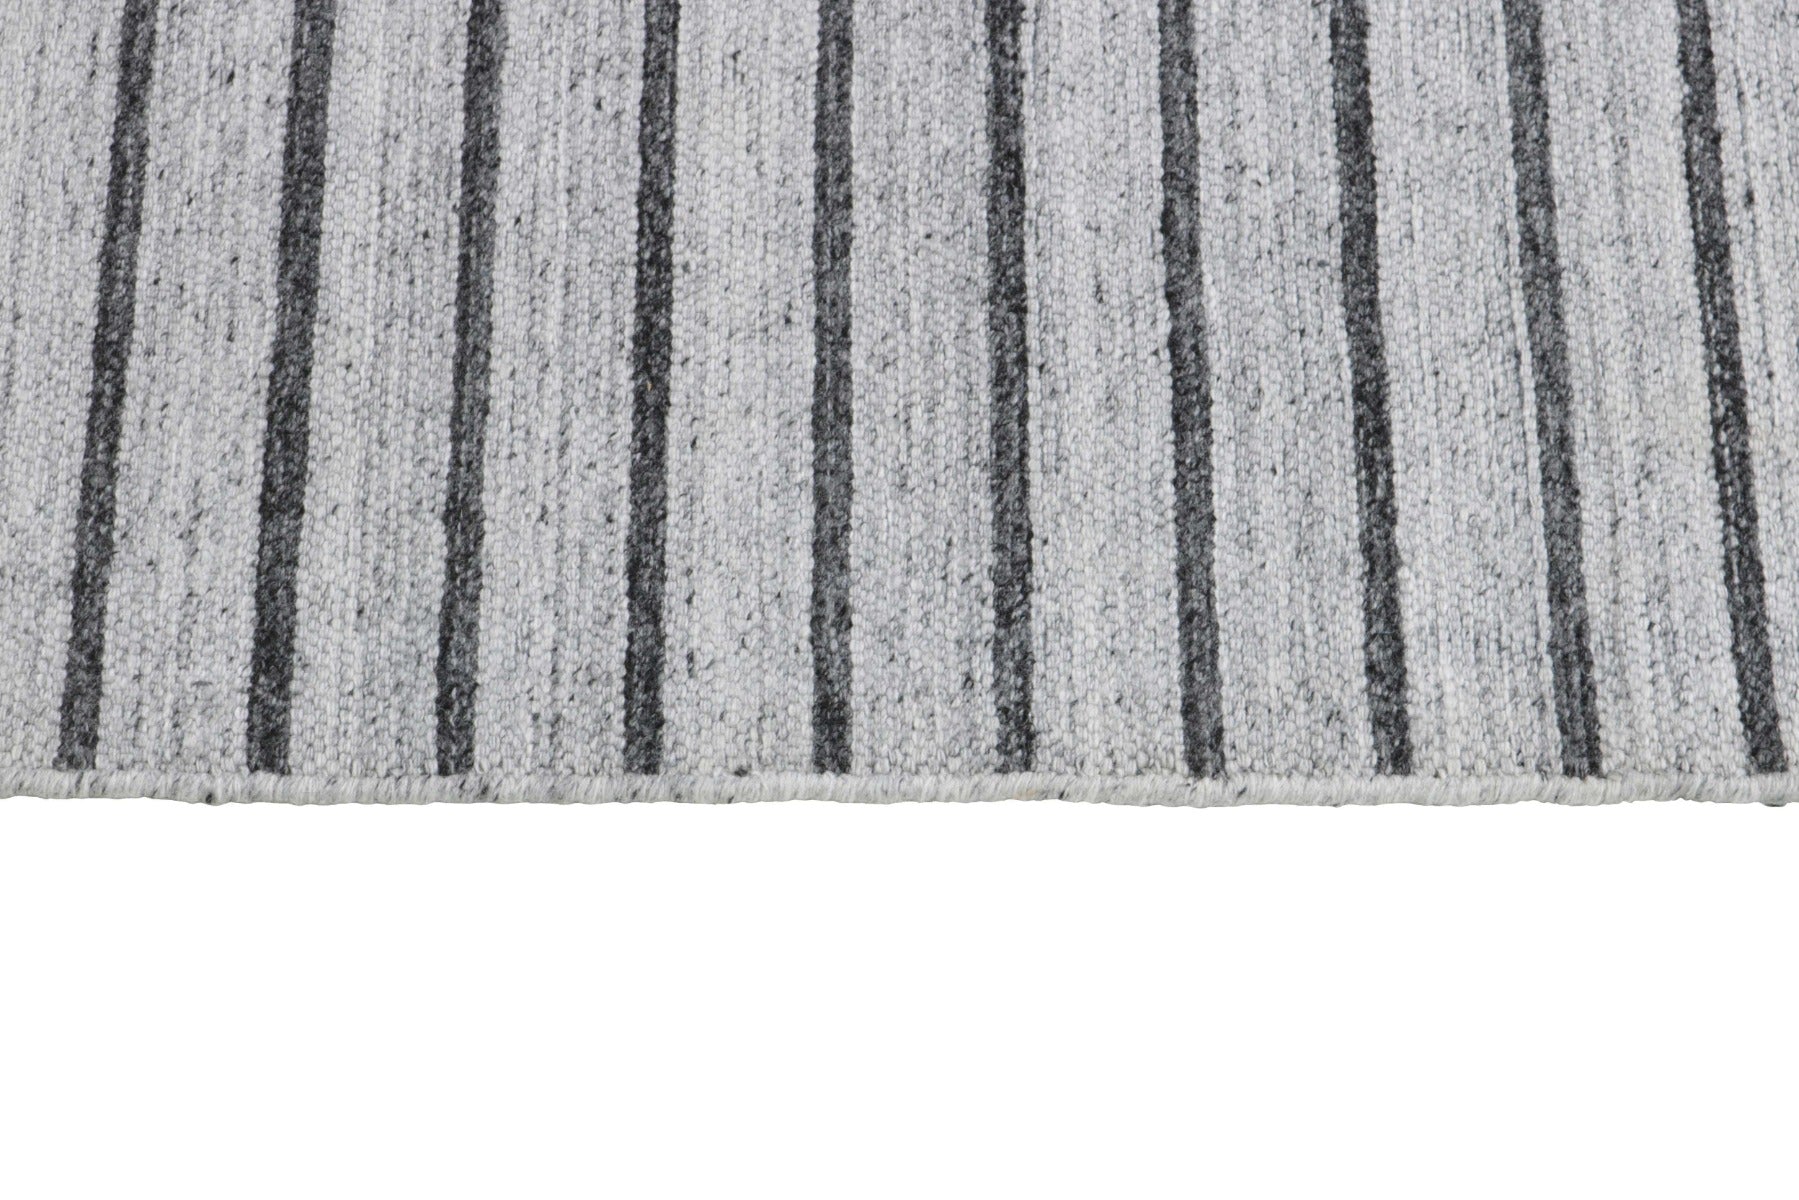 authentic oriental kelim flatweave striped rug in grey and black